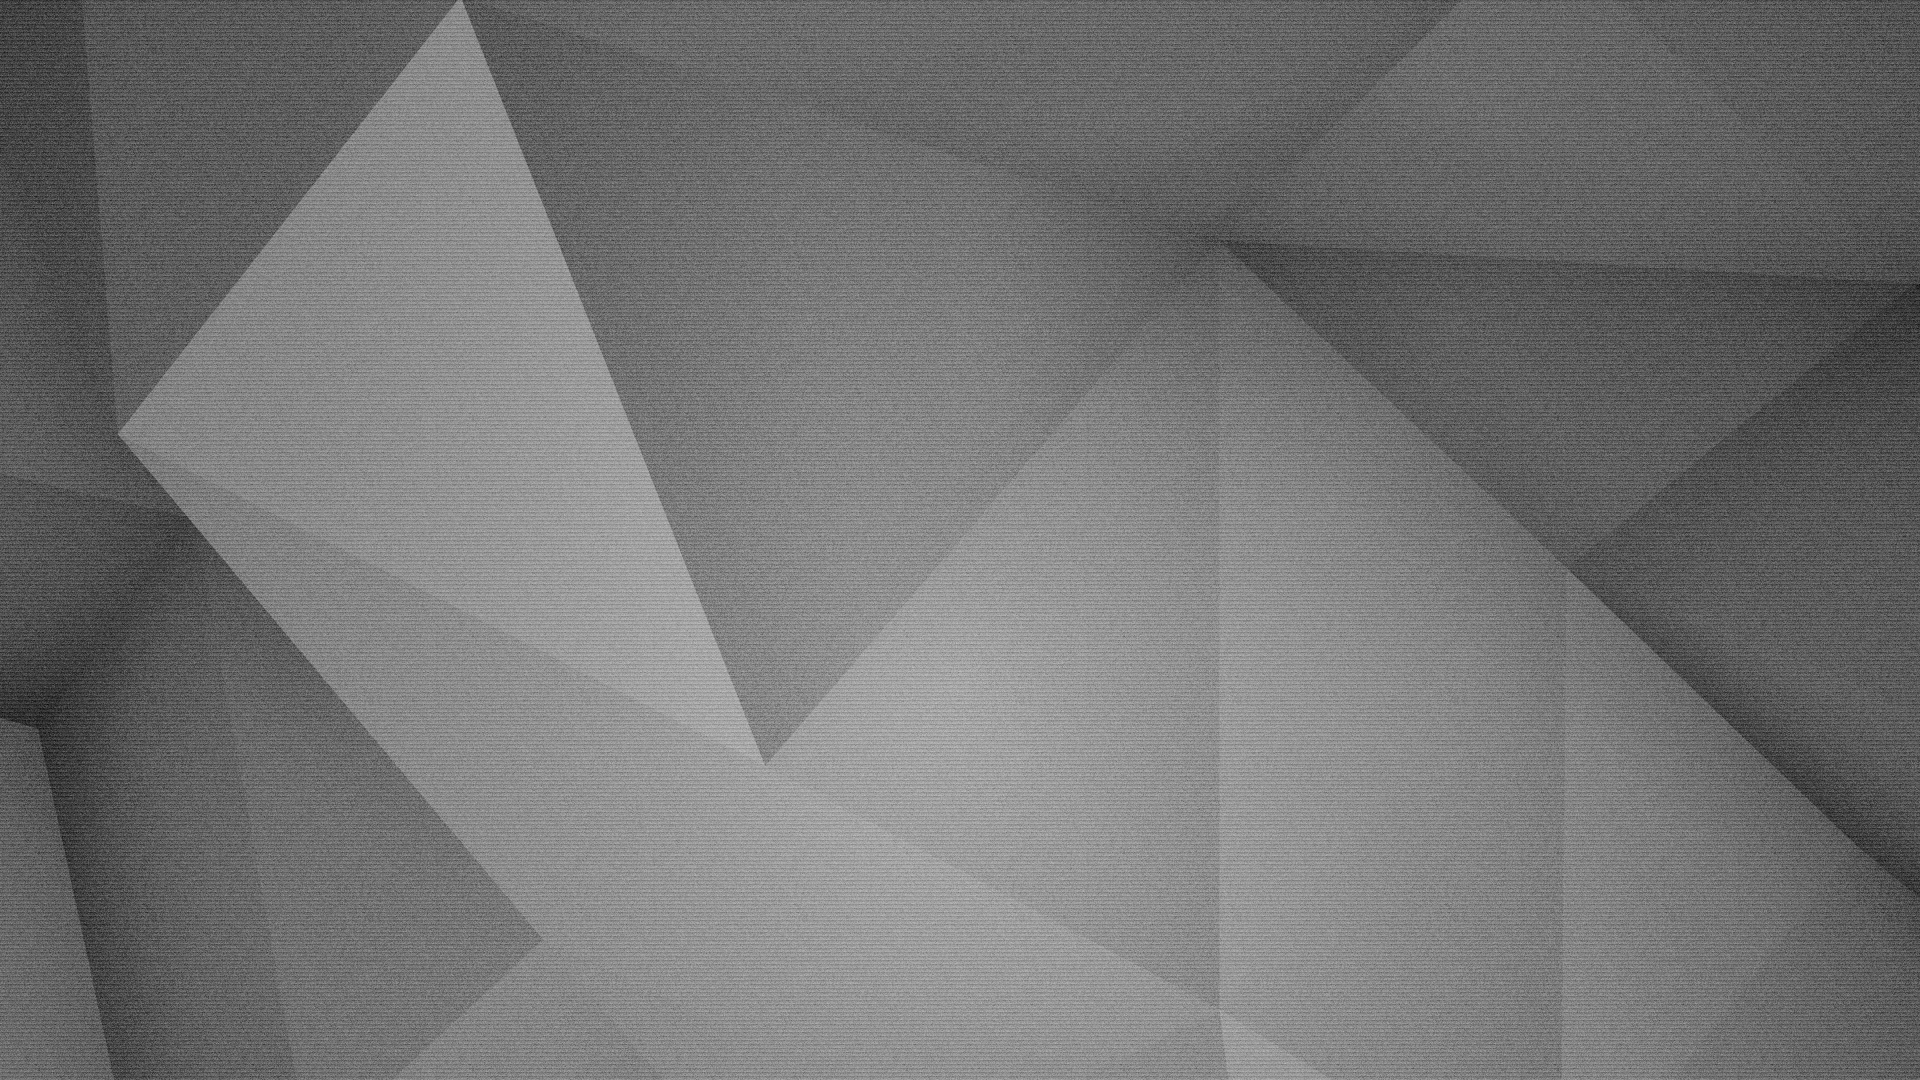 Dark Grey Desktop Wallpapers - Wallpaper Cave